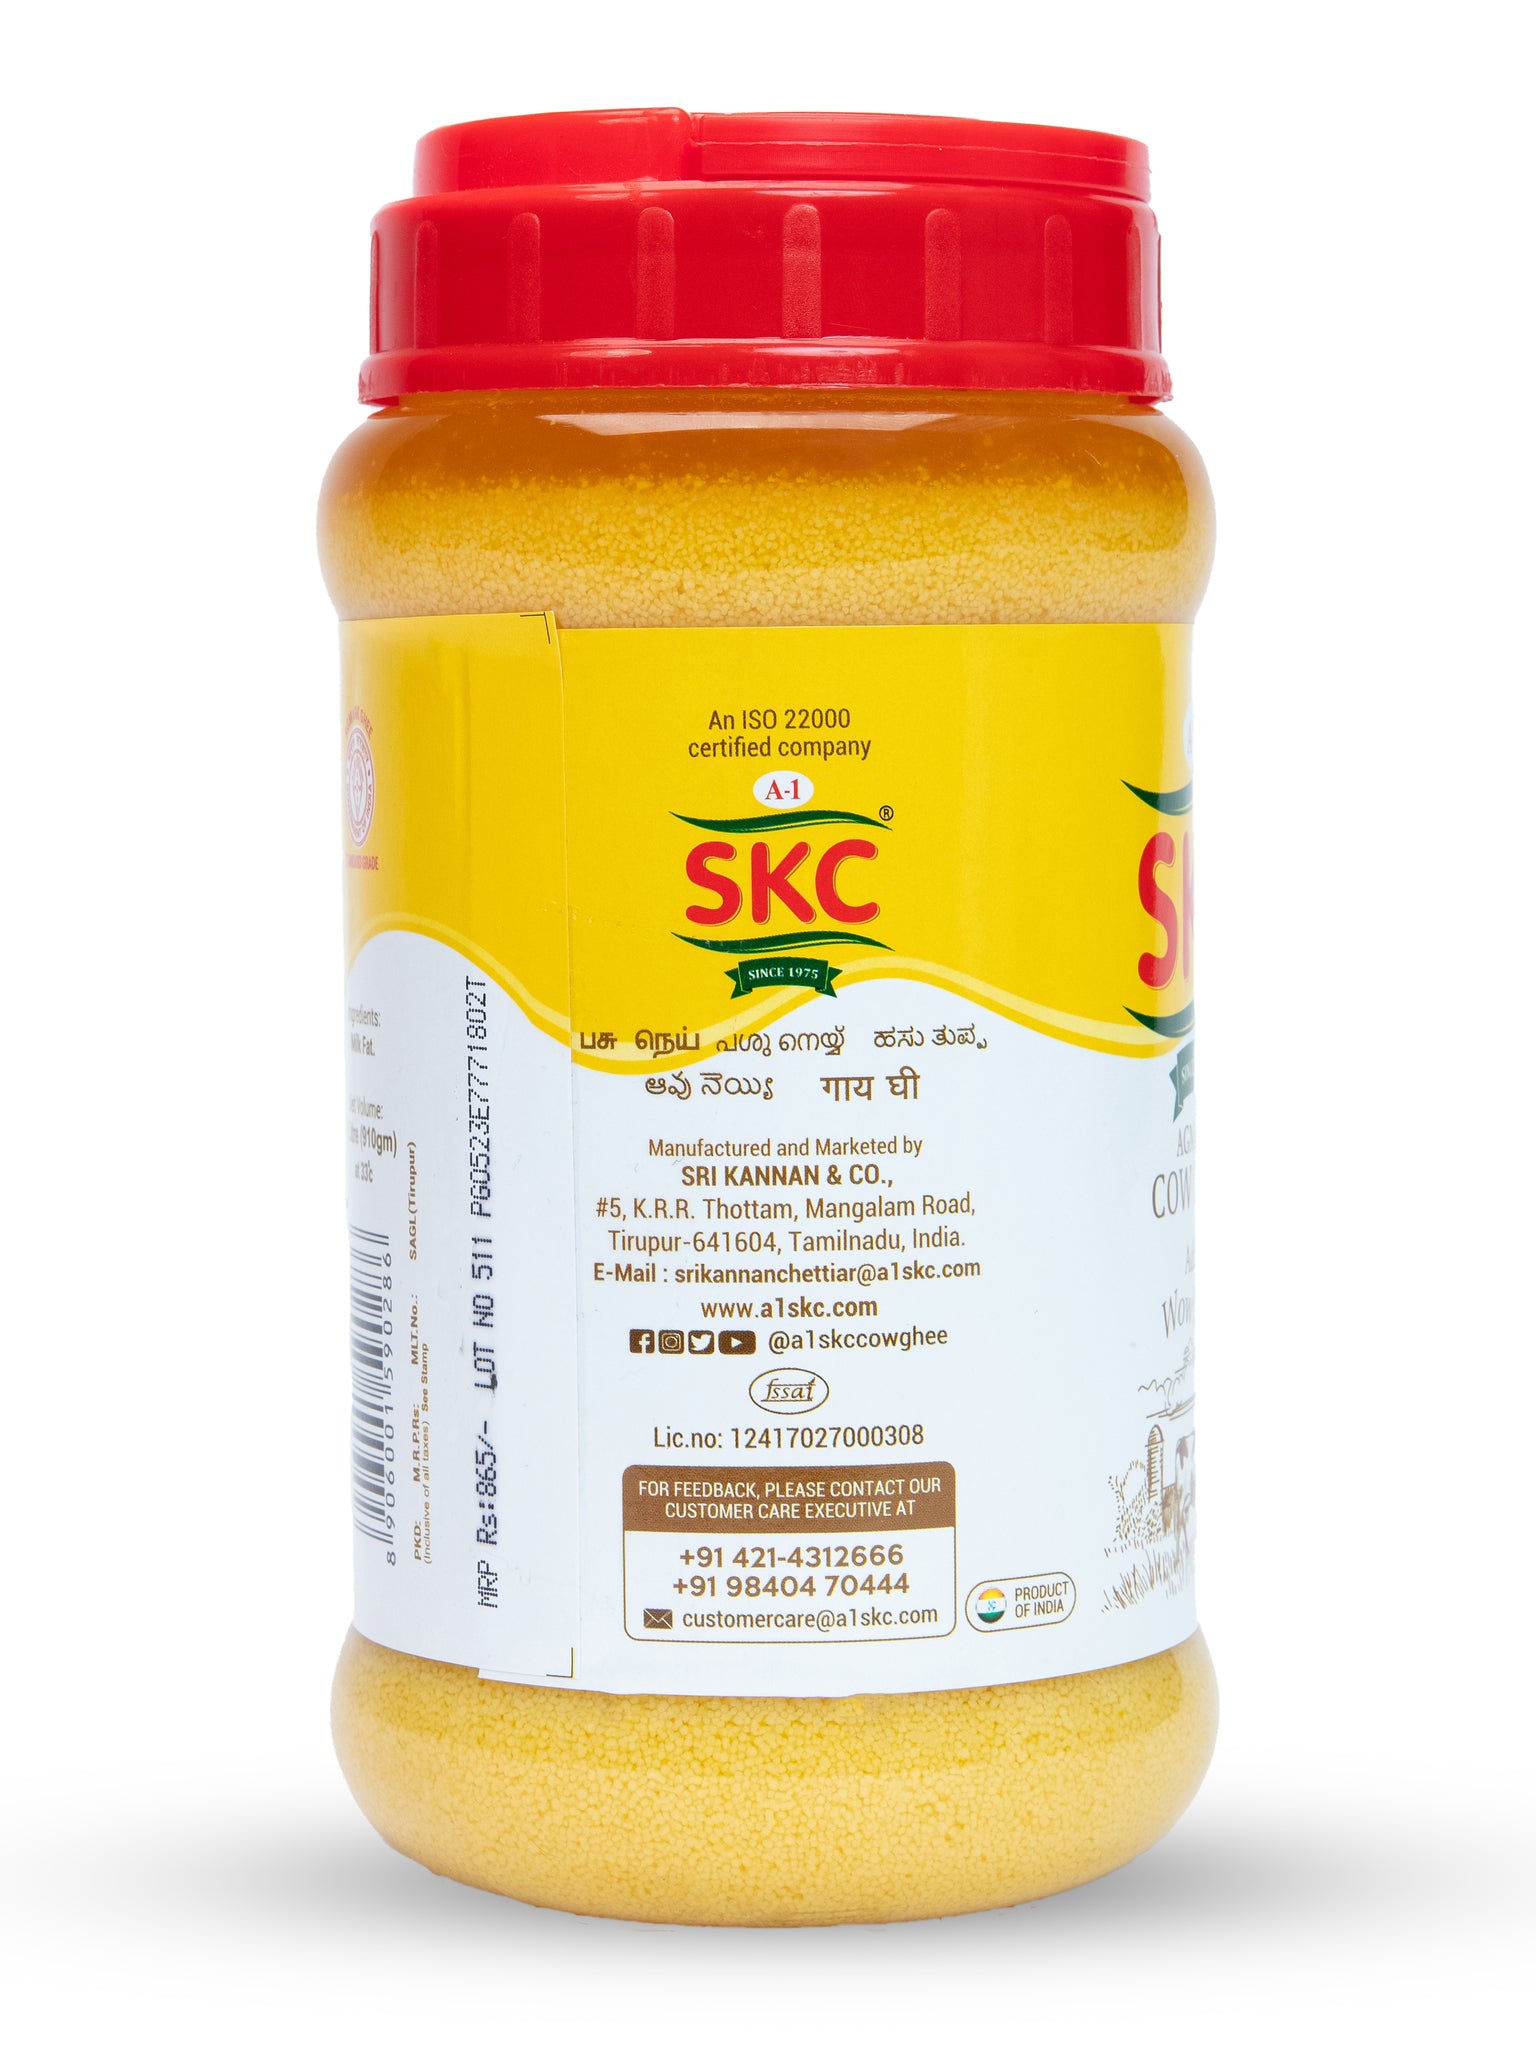 A1 SKC Pure Cow Ghee 1 litre Jar